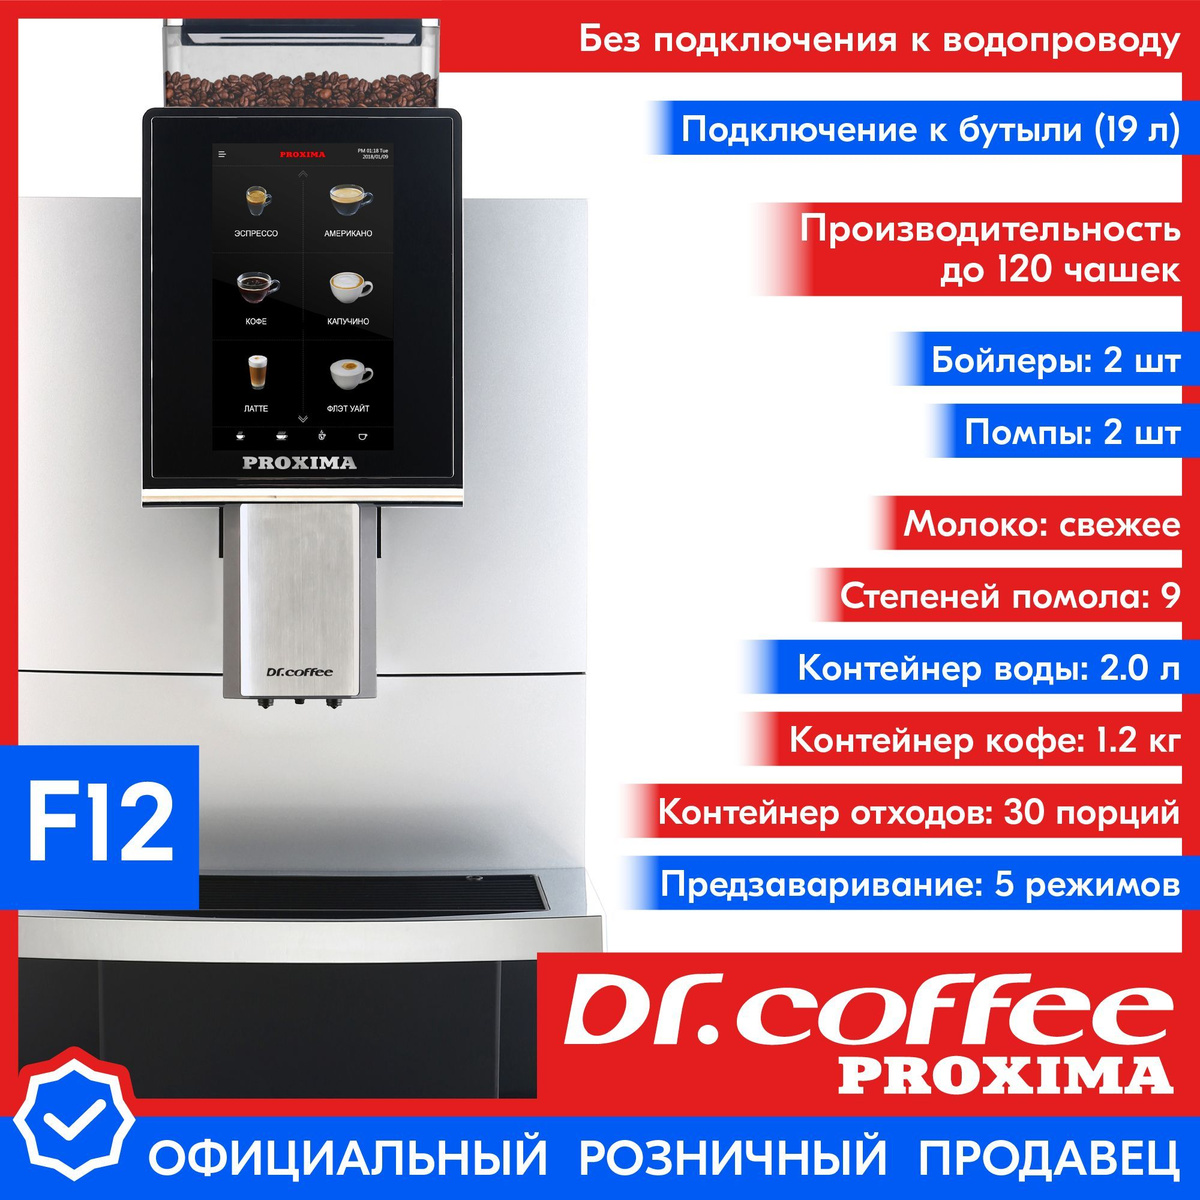 Профессиональная кофемашина Dr.coffee PROXIMA F12 (без подключения к водопроводу)